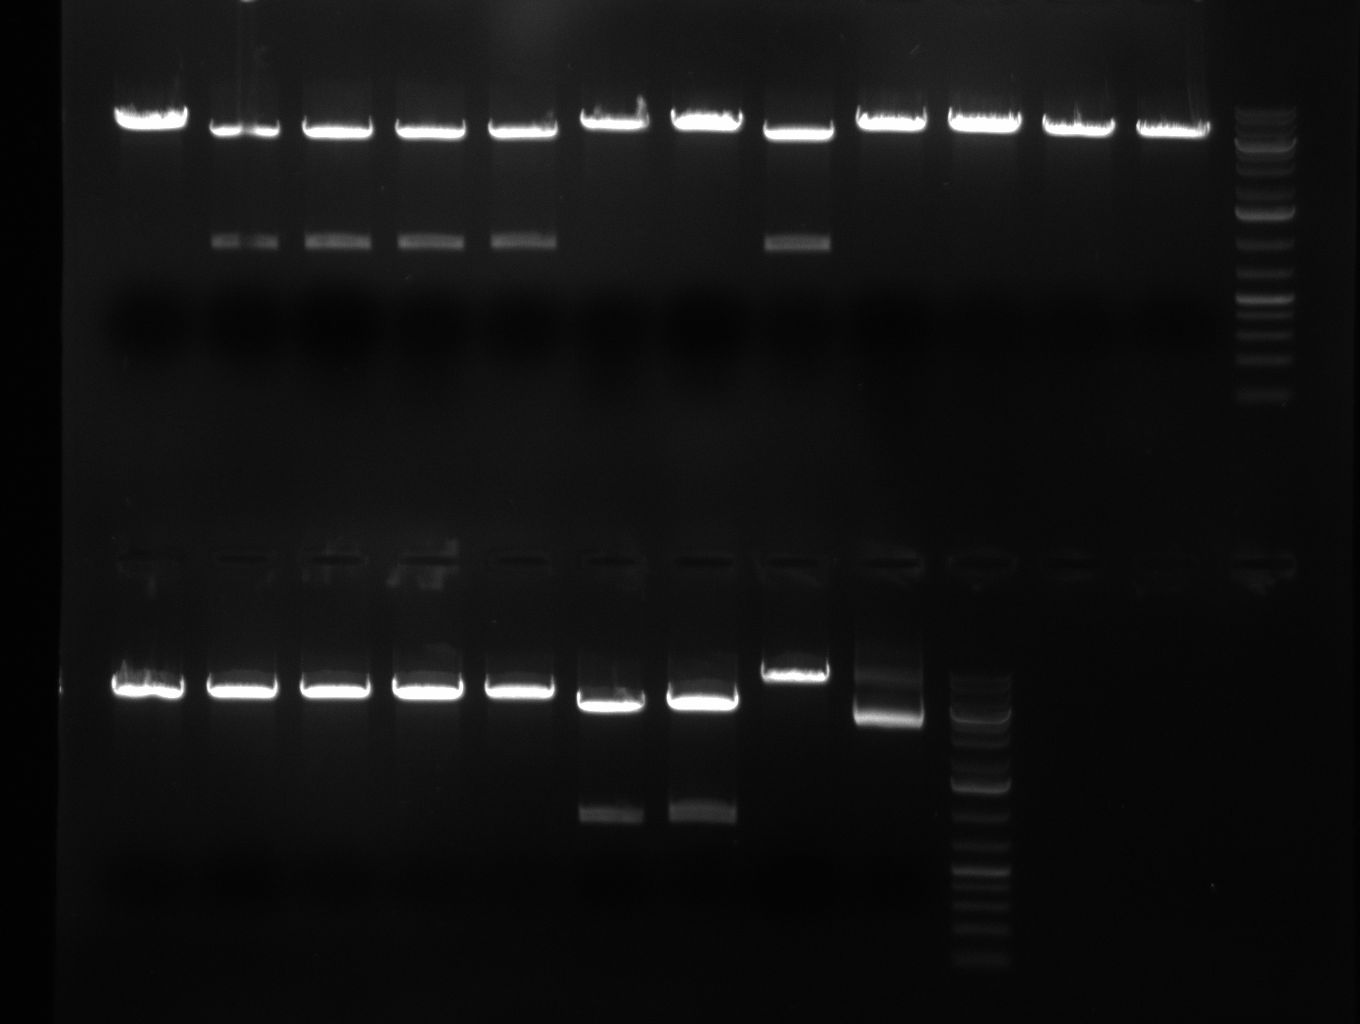 Rb100911 testdigestshRNA.jpg